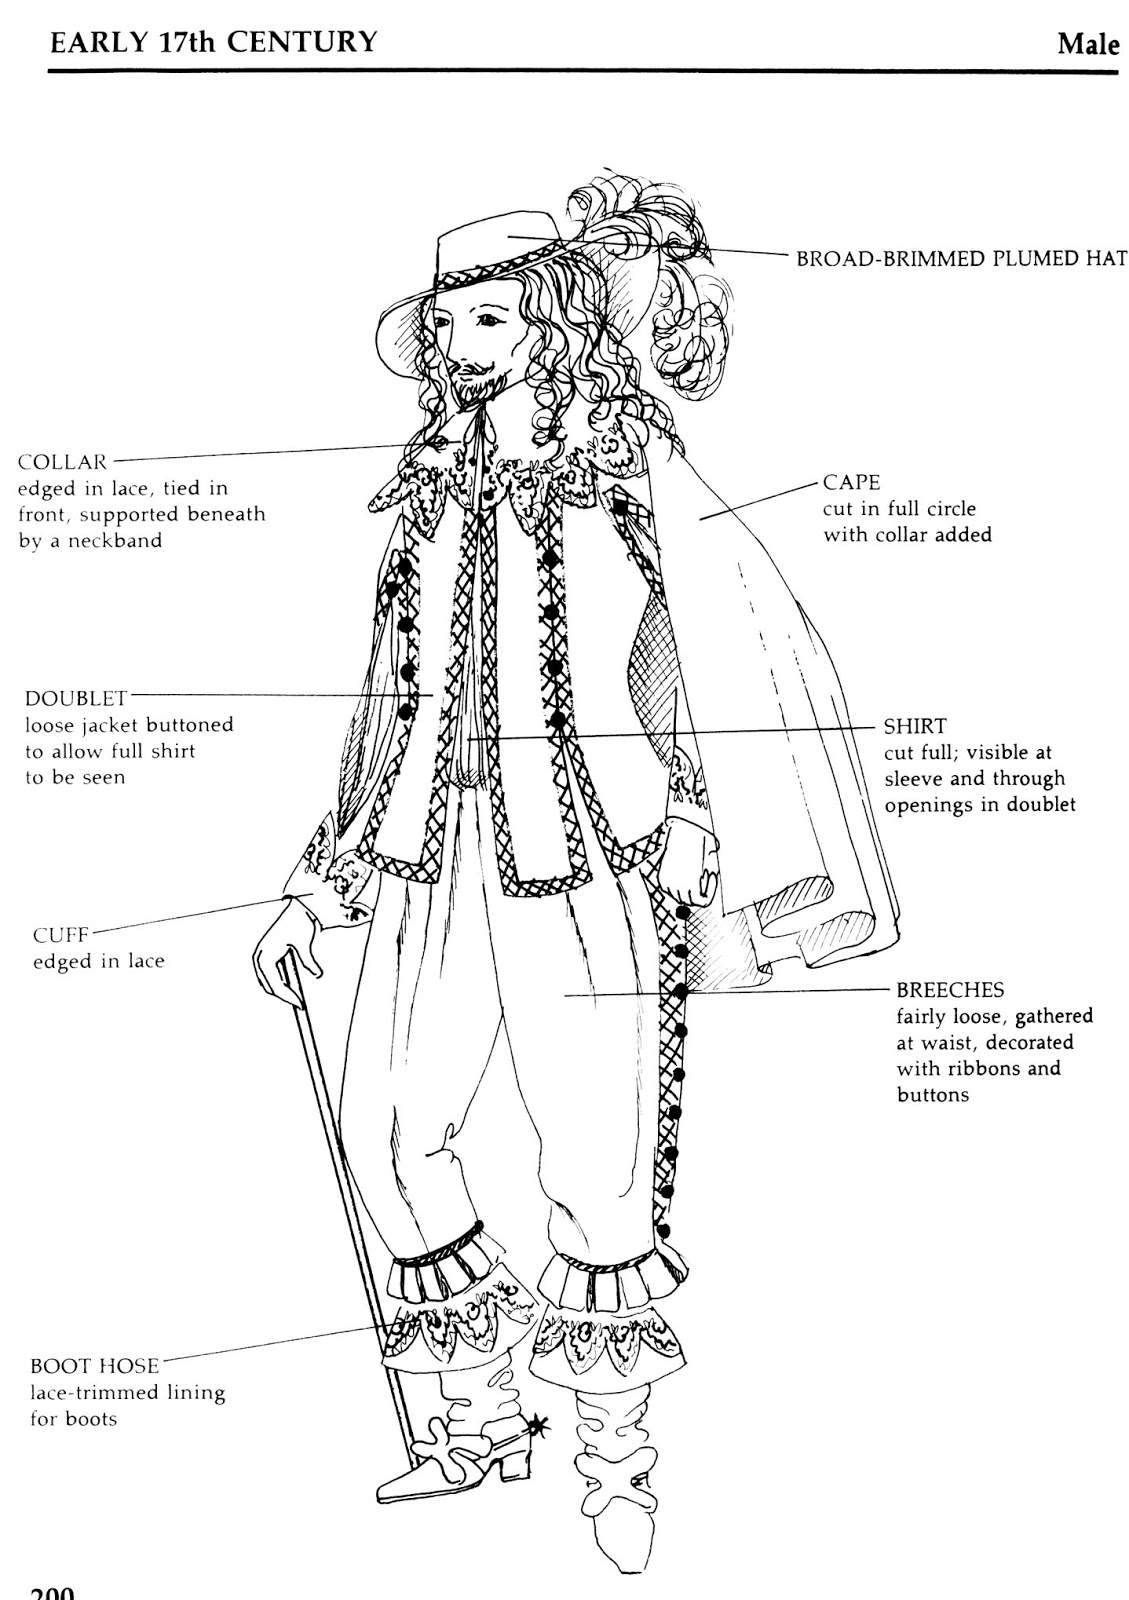 Мужской костюм 17 века рисунок